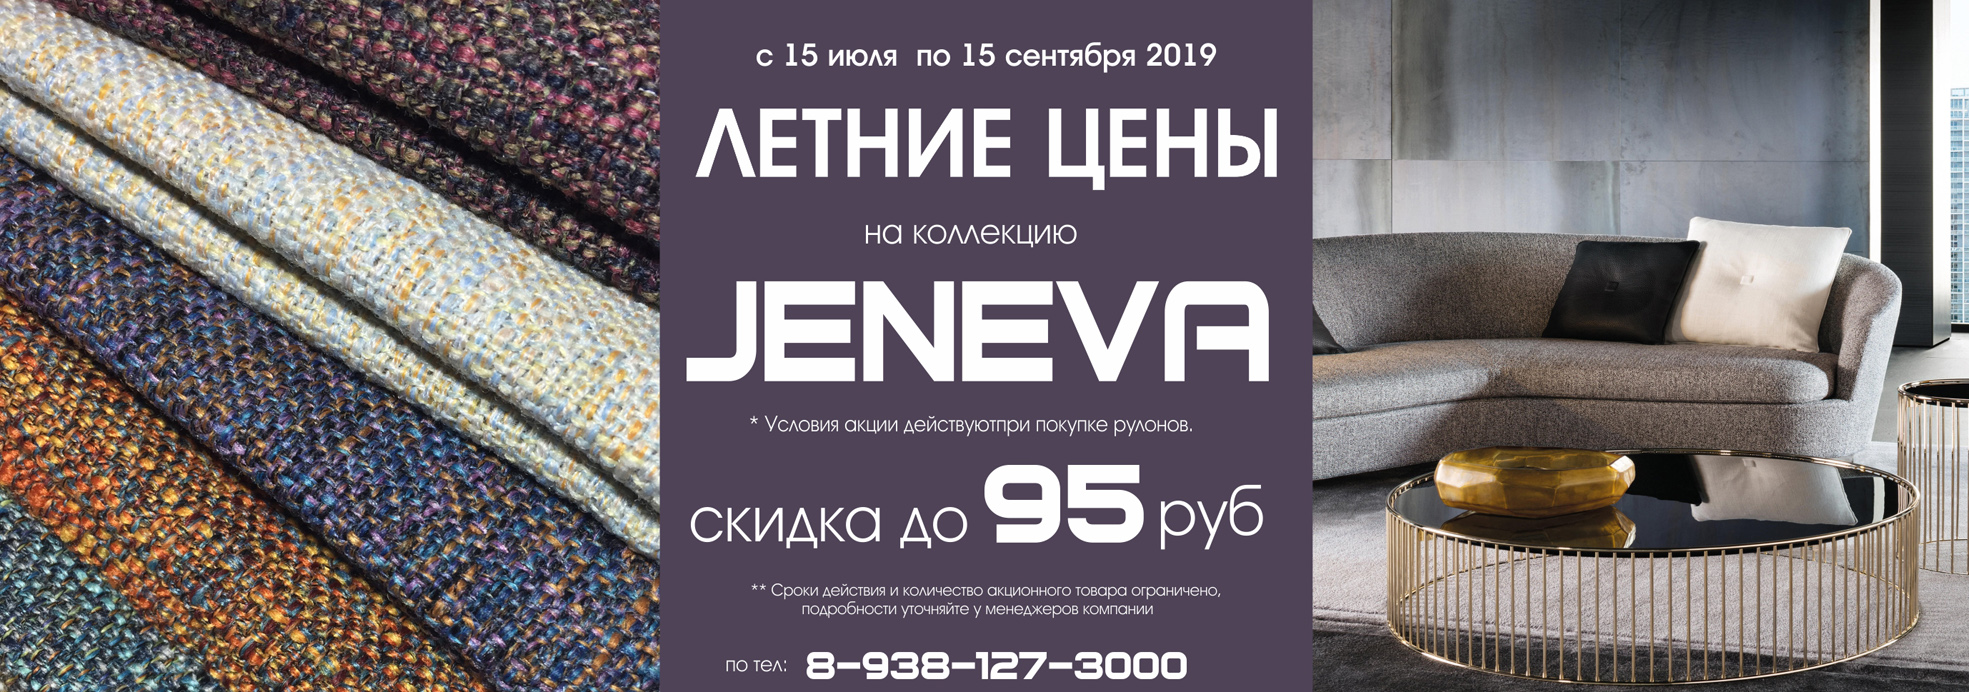 Best offer Jeneva